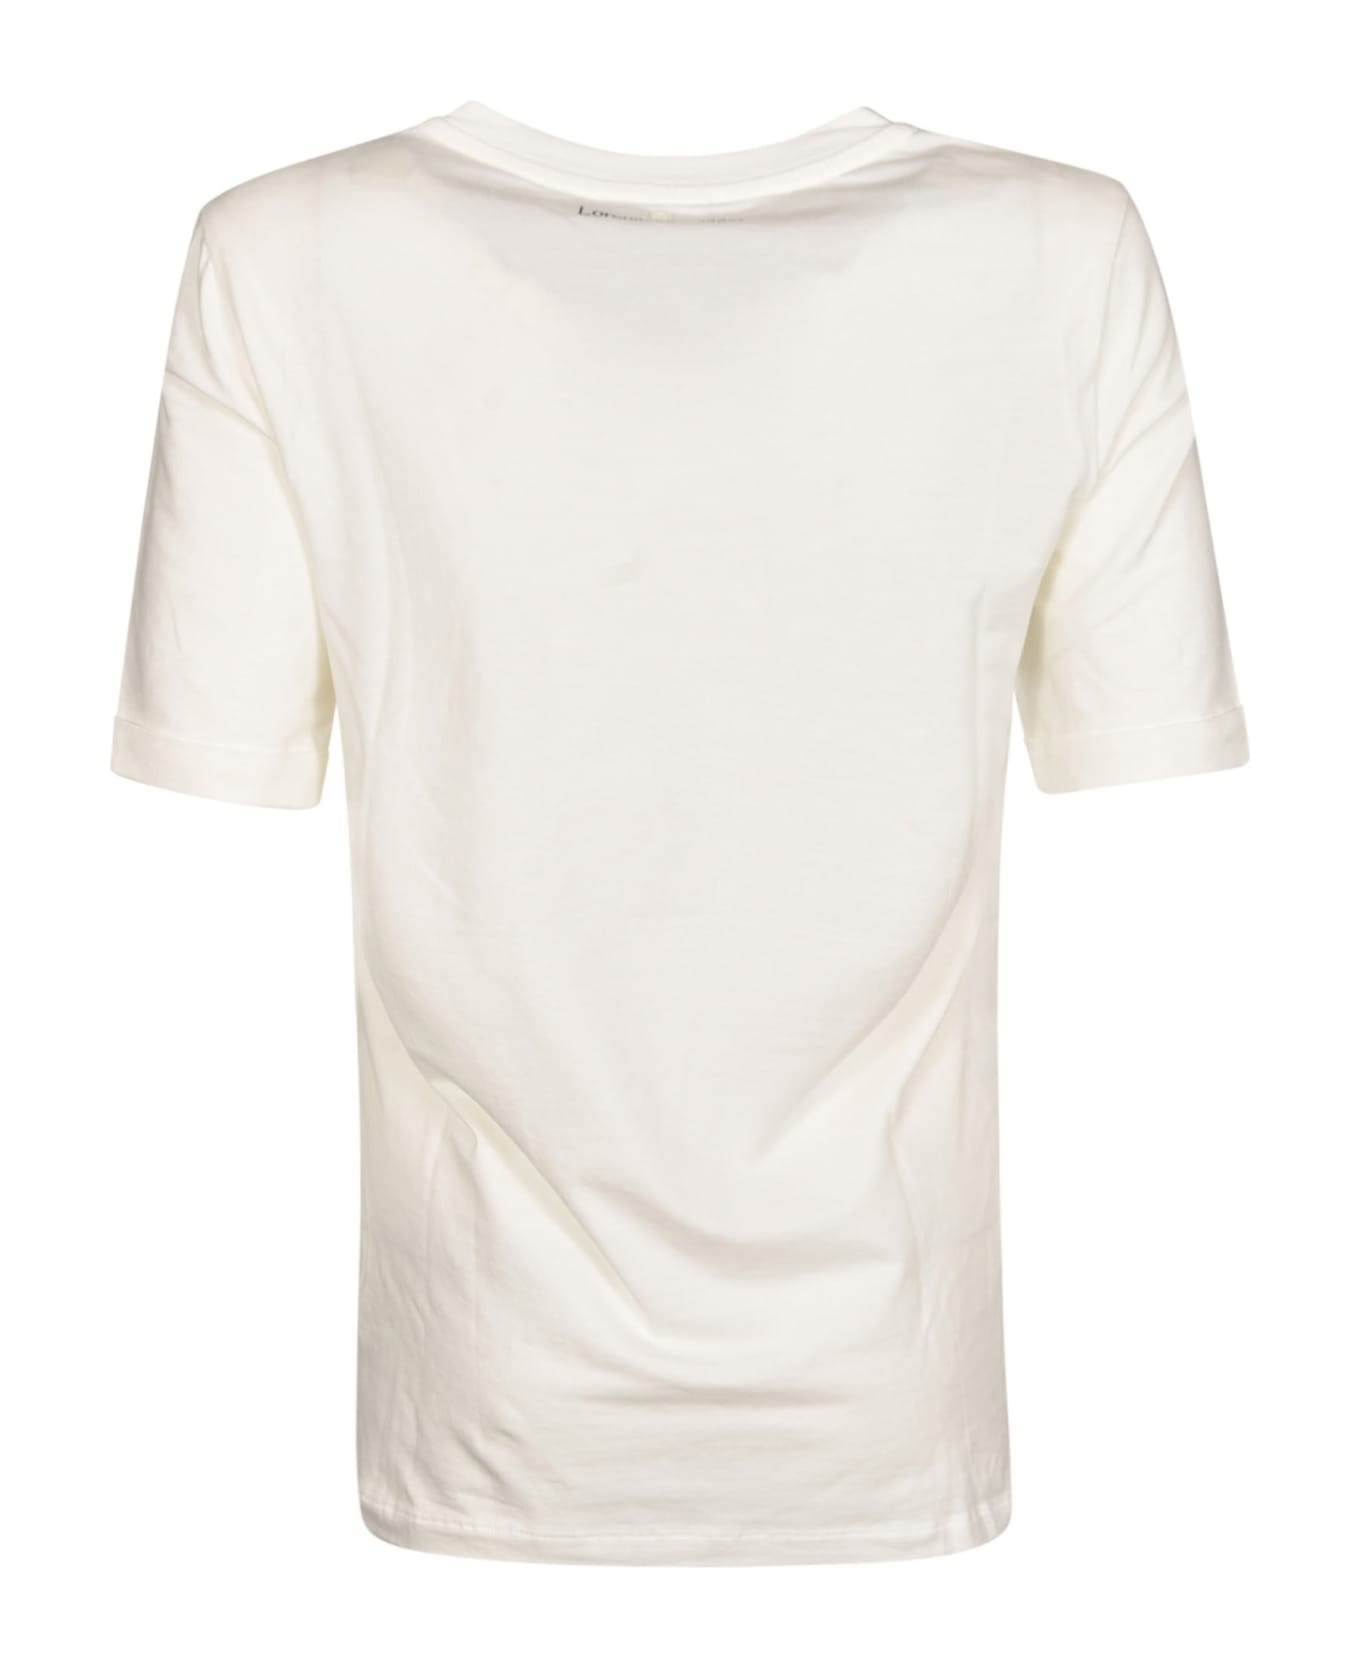 Lorena Antoniazzi Logo T-shirt - White